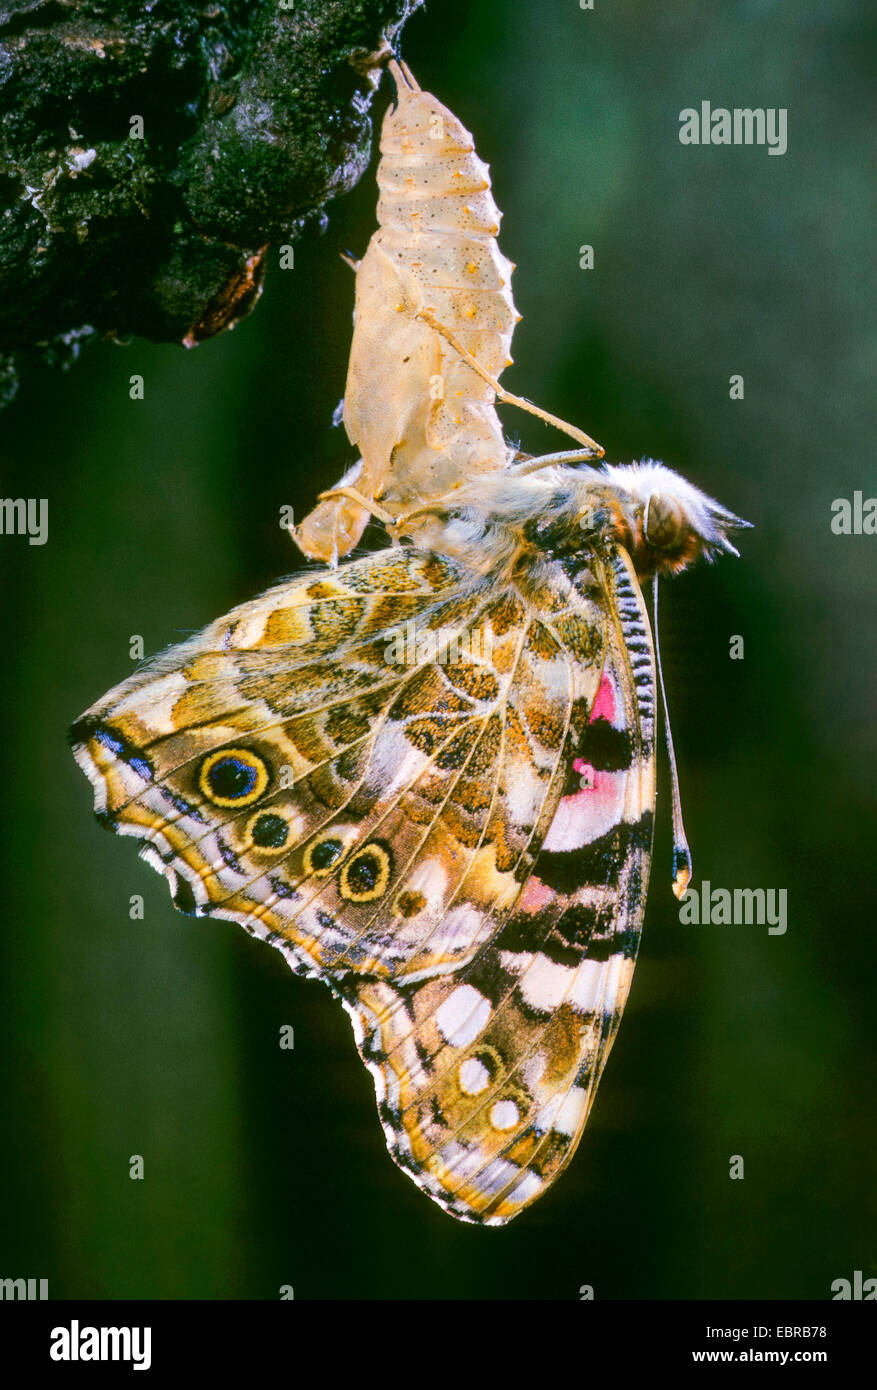 Distelfalter (Vanessa Cardui, Cynthia Cardui, Pyrameis Cardui), Schmetterling schlüpfen aus der Puppe, Deutschland Stockfoto